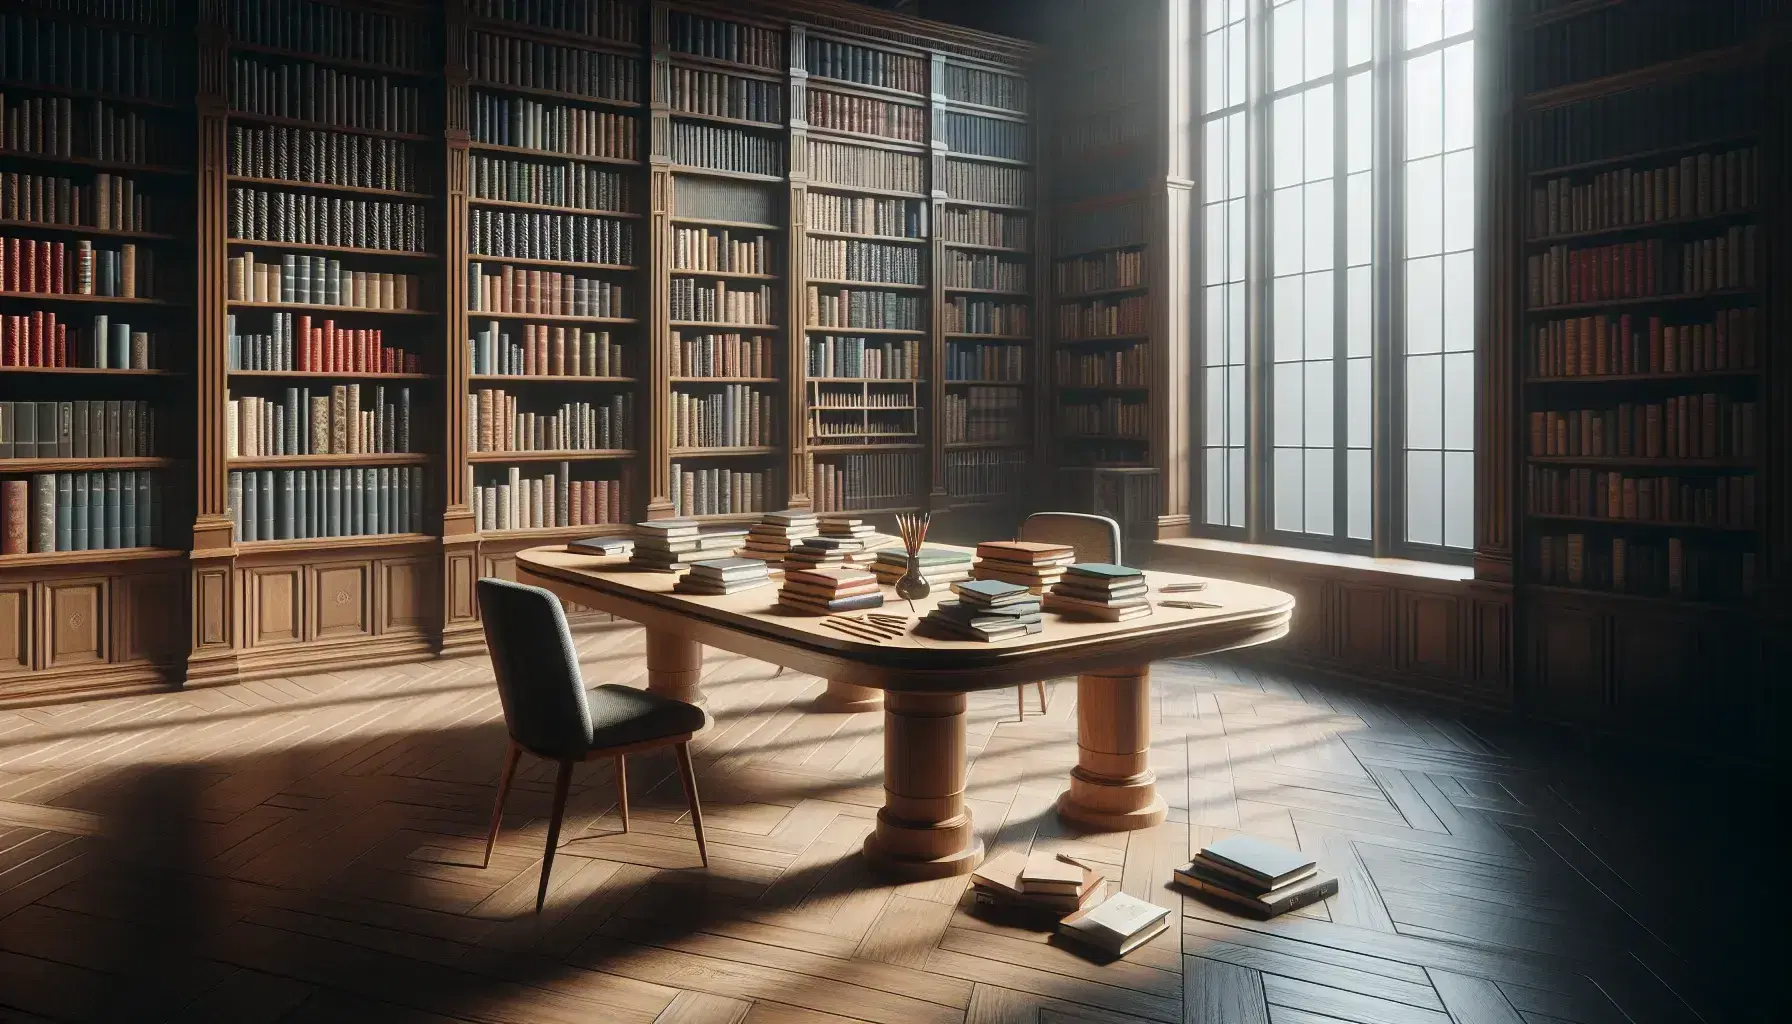 Biblioteca acogedora con estantes de madera oscura llenos de libros, mesa central con libros abiertos y lápices, silla con cojín gris y ventana que ilumina suavemente el espacio.